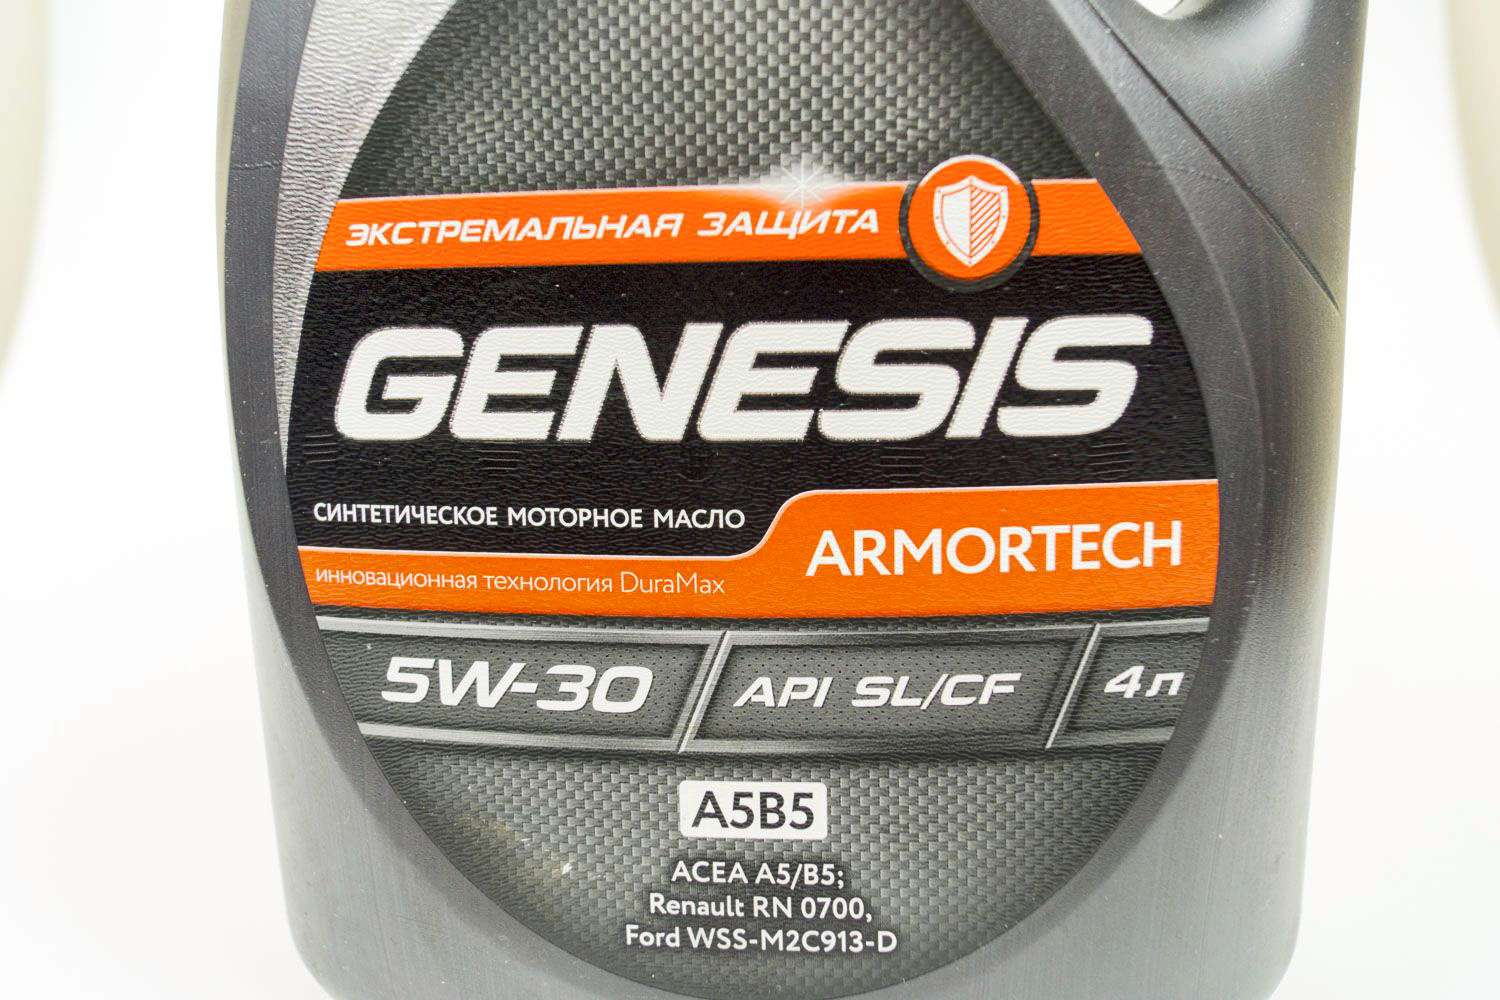 Api sl a5 b5. Genesis Armortech 5w-30. Lukoil Genesis Armortech 5w-30. Genesis Armortech 5w30 защита. Lukoil Genesis 5w30 SL/CF a5/b5.